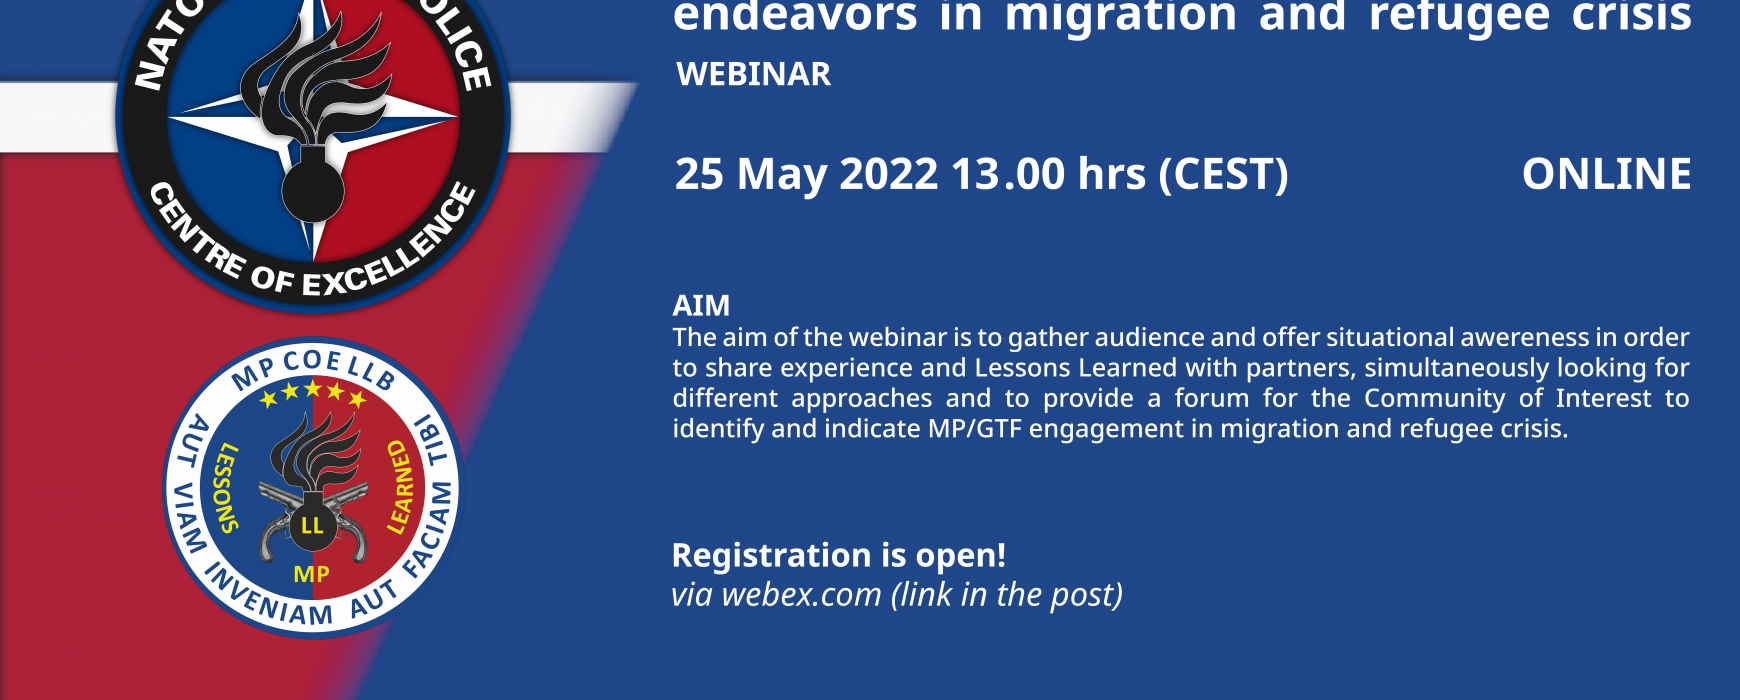 MP/GTF endeavors in migration and refugee crisis webinar